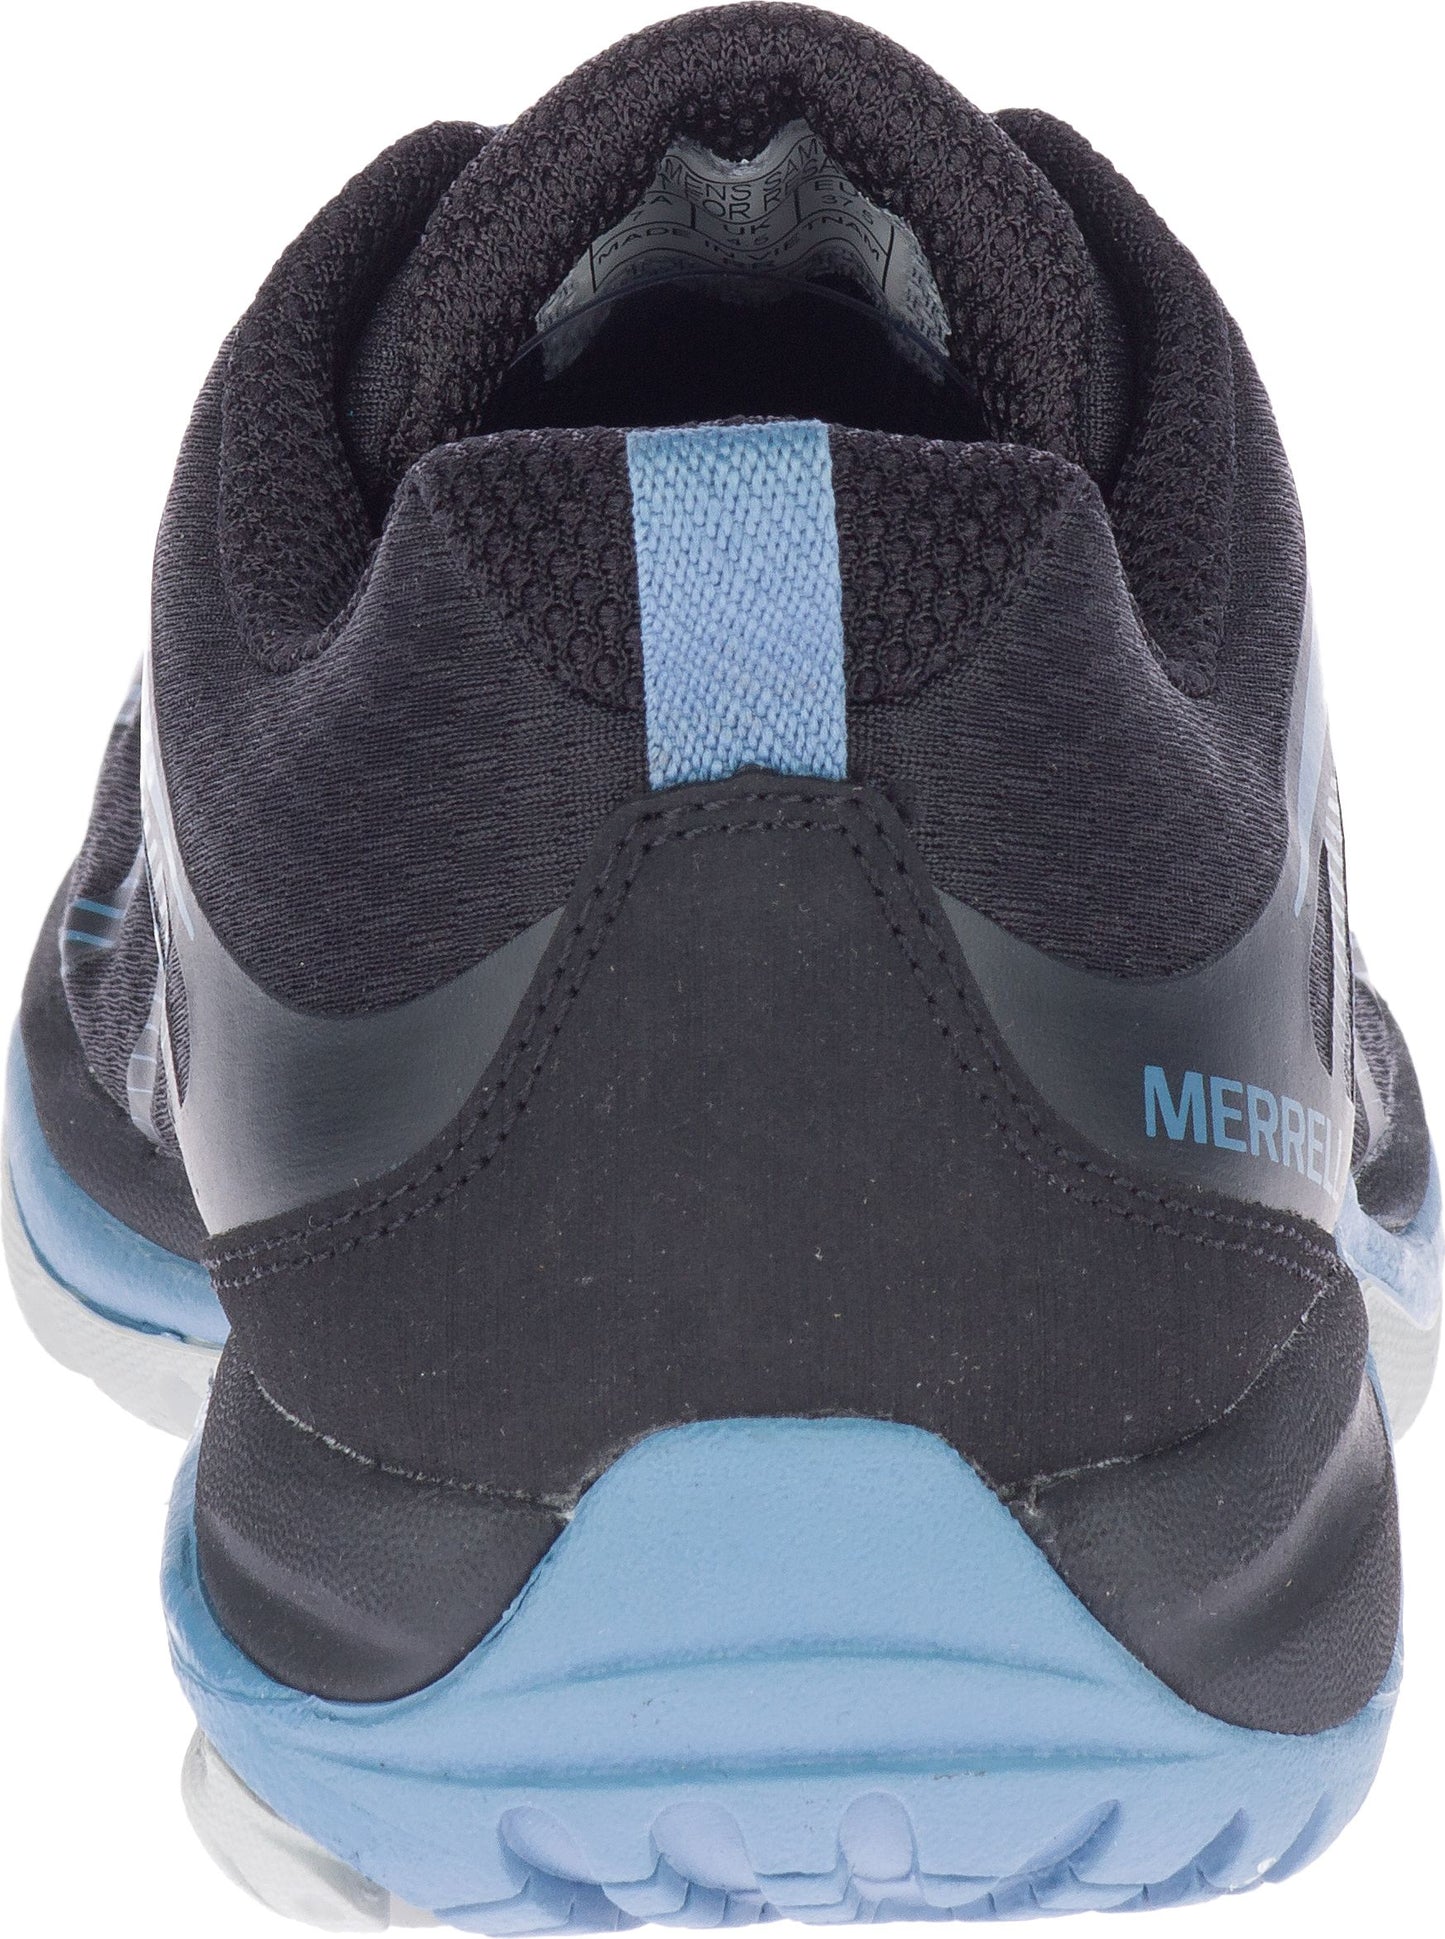 Merrell Shoes Siren Edge 3 Black Blue